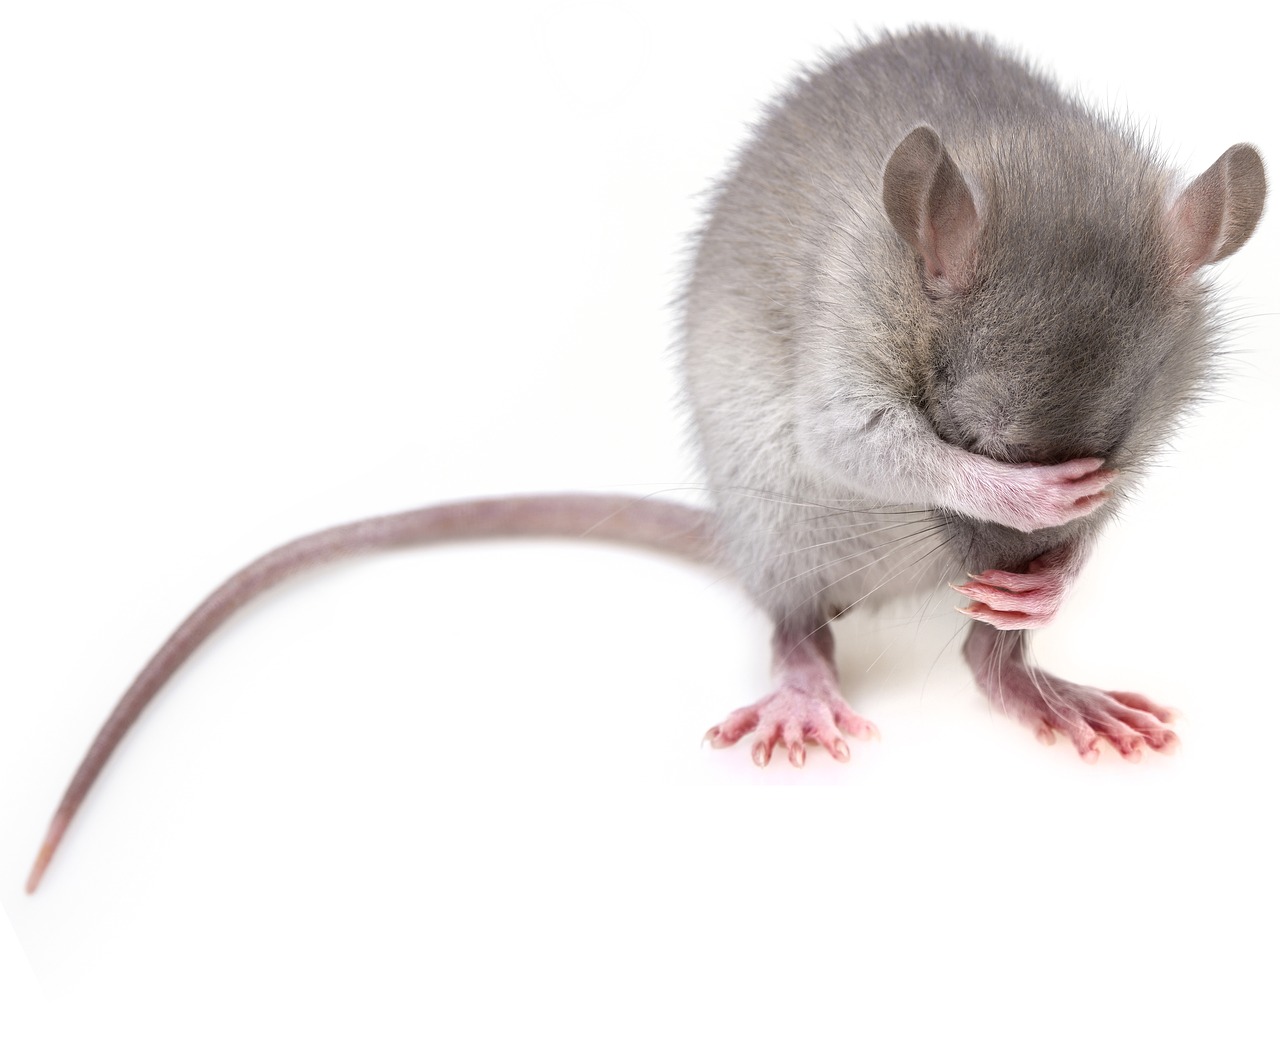 Jak wybrać karmę dla szczura?